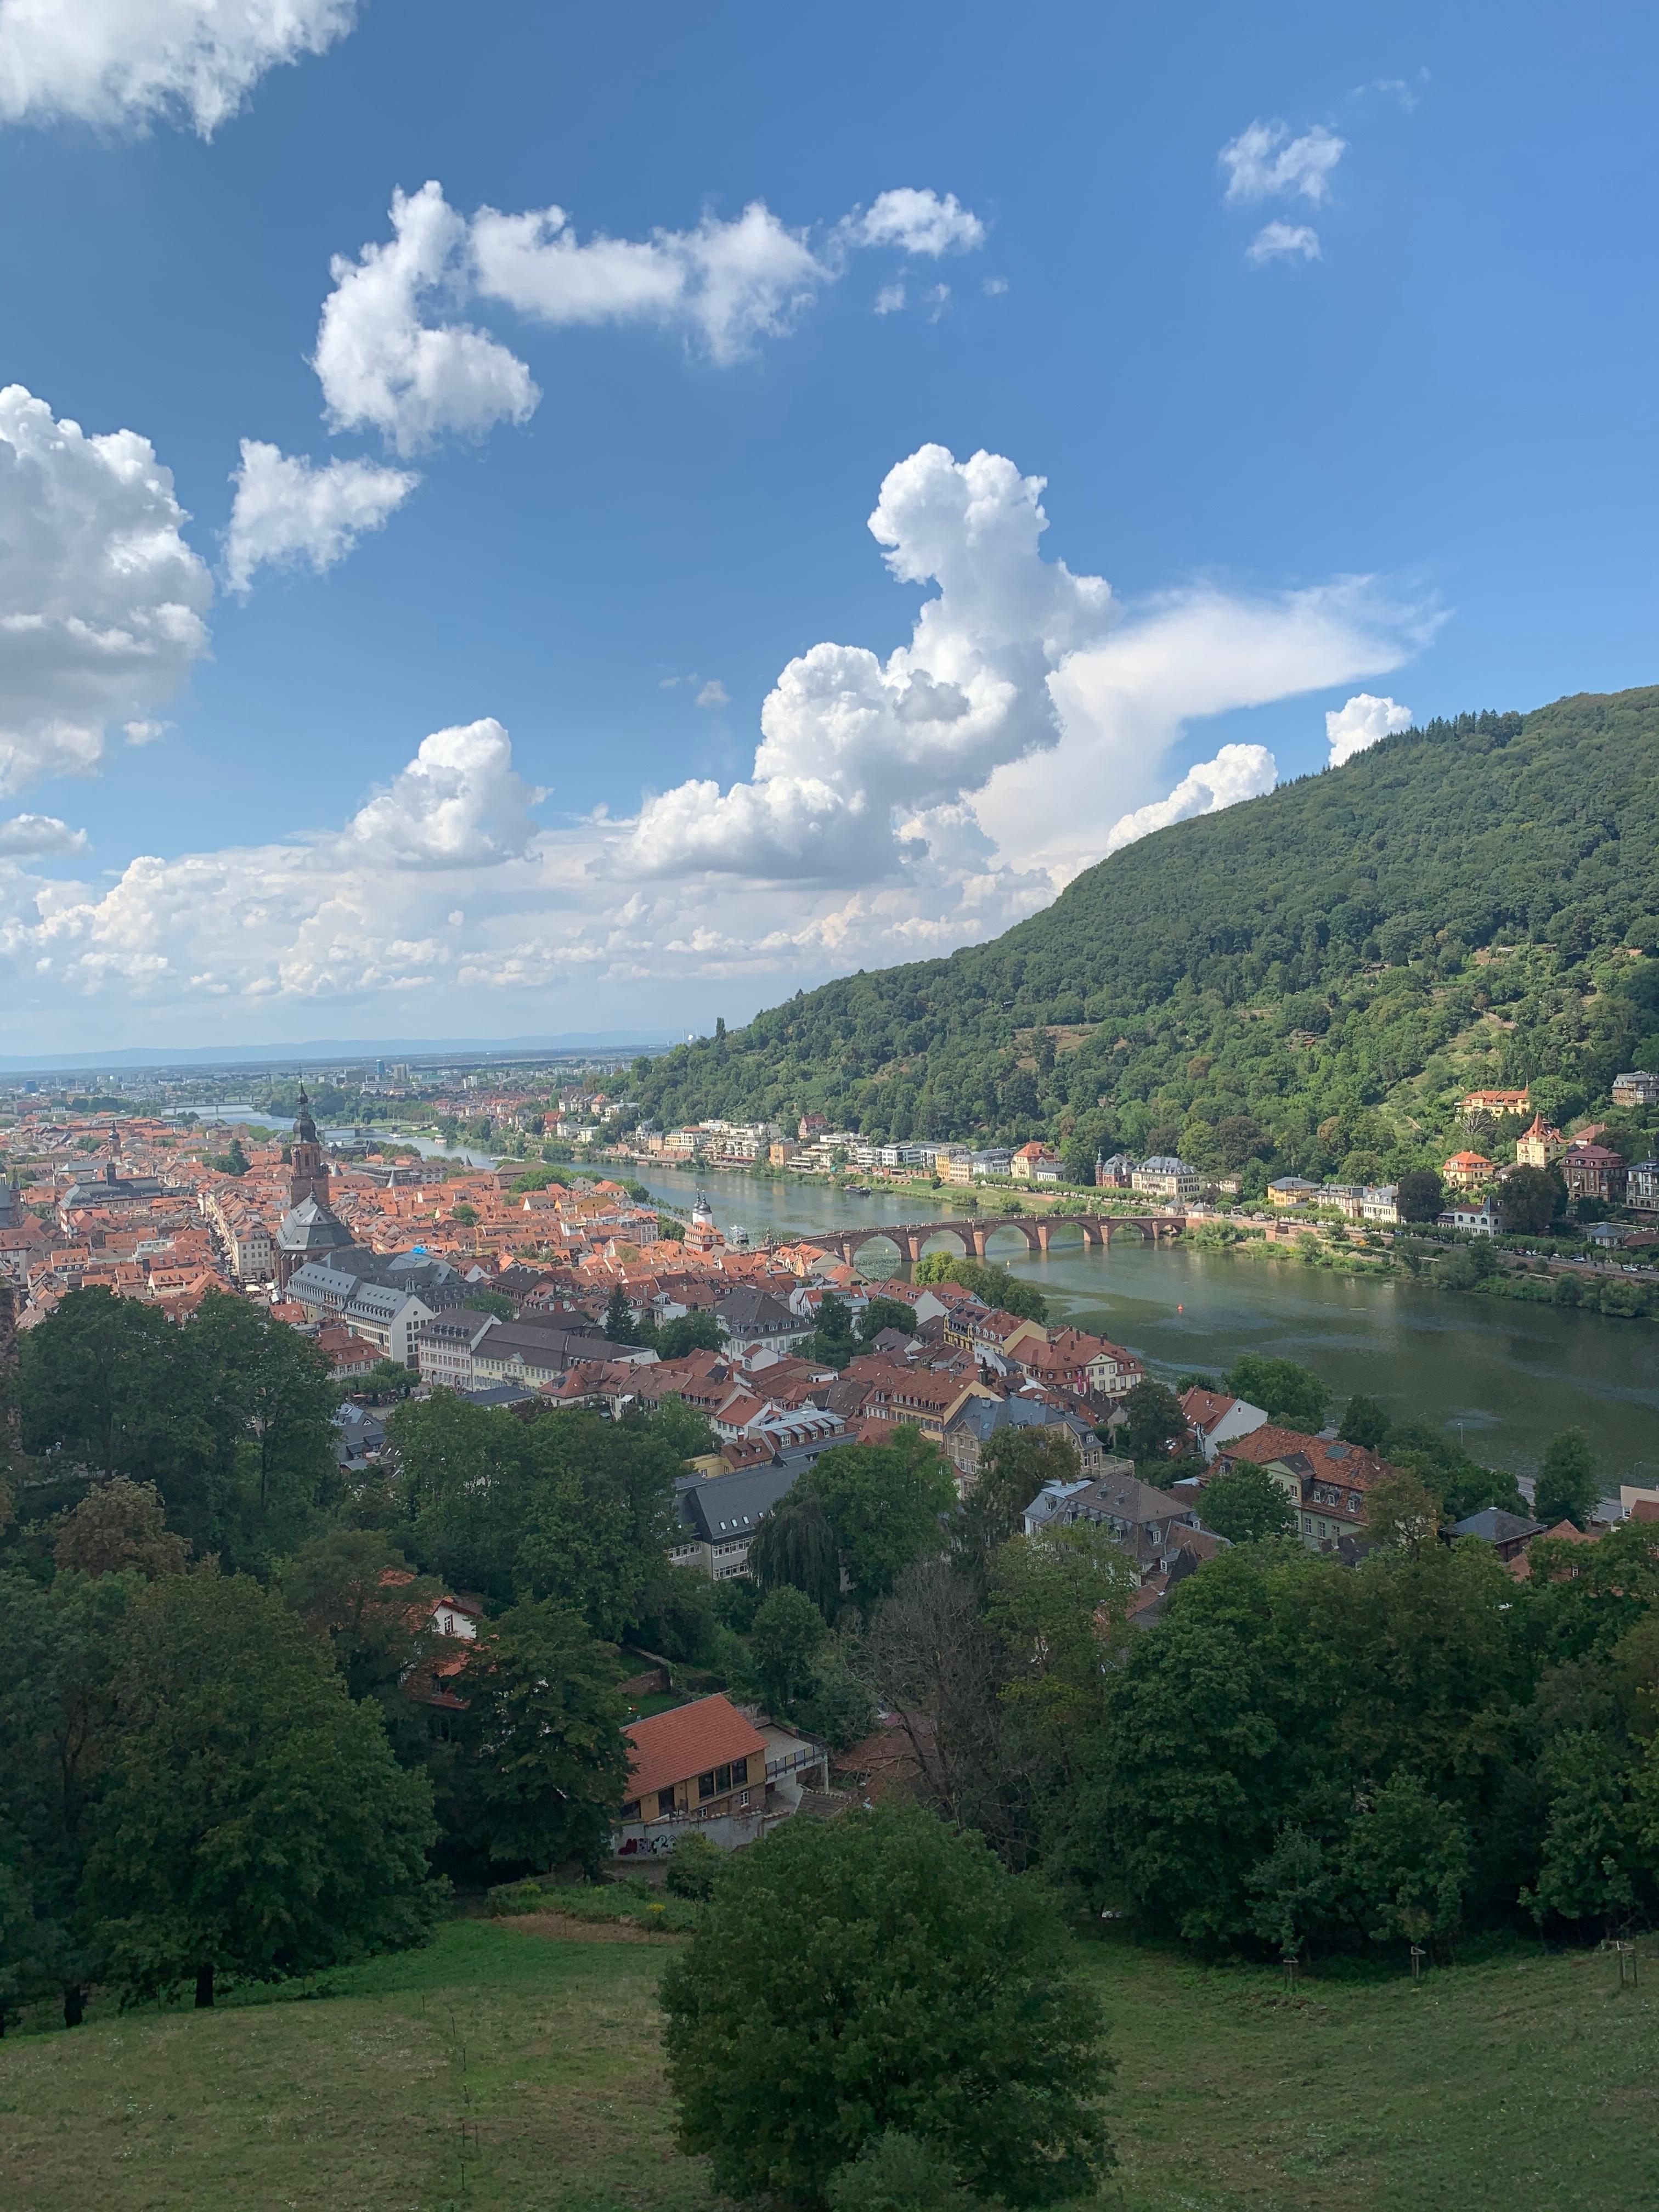 Mein letzter #städtetrip ging am Samstag nach Heidelberg. So schöne kleine Gässchen zum schlendern 😍 #travelchallenge